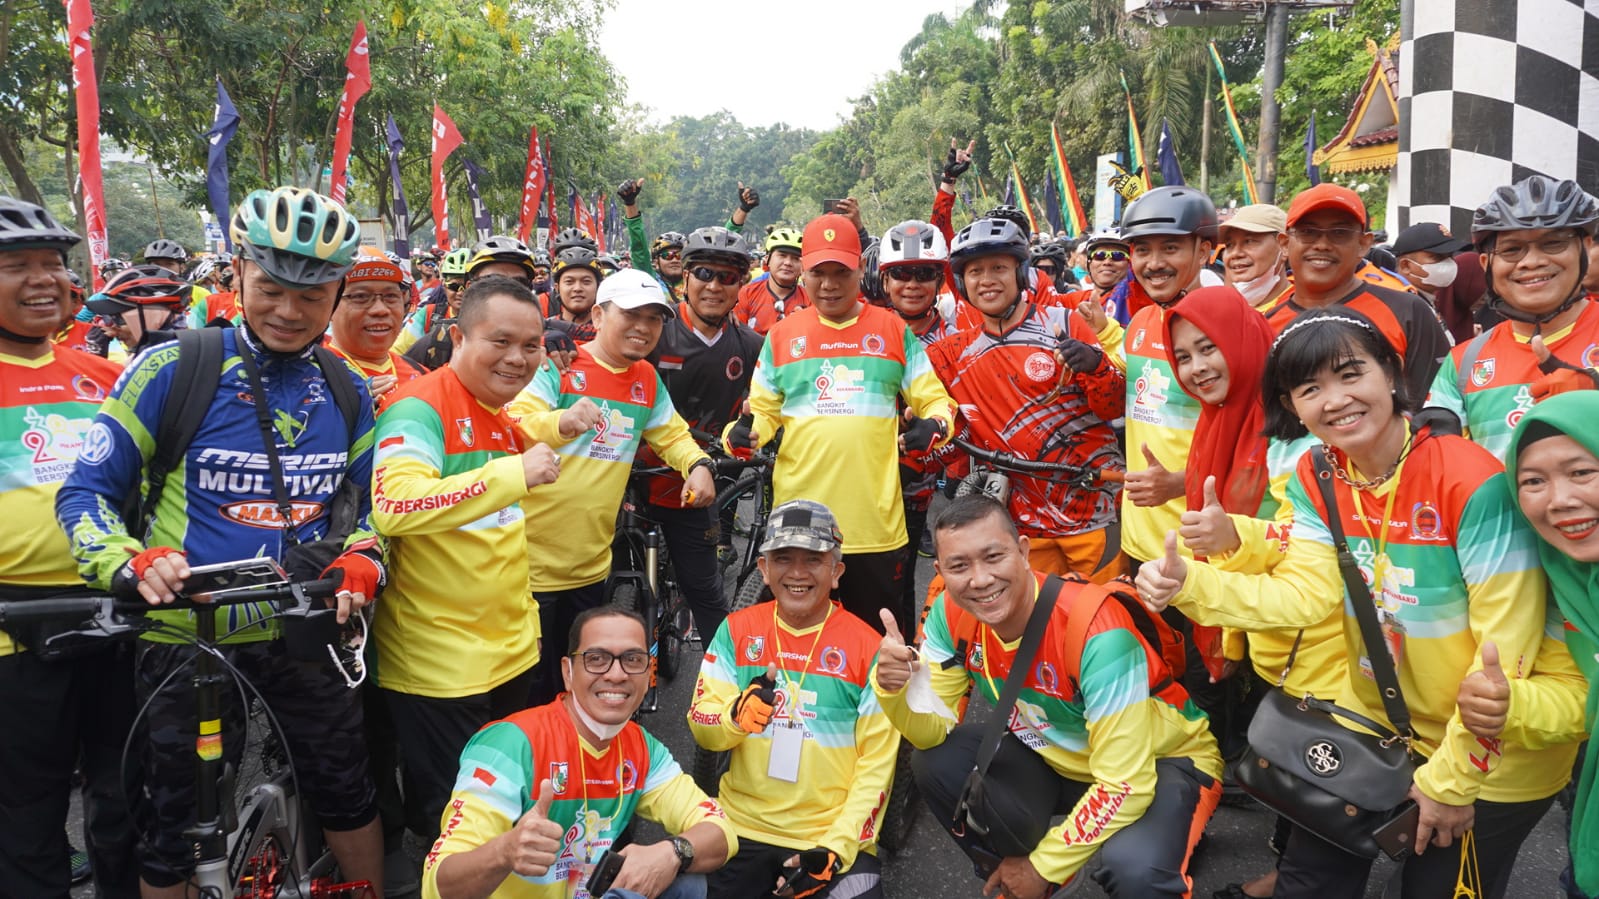 Sempena HUT LPM RI ke-22  Ribuan Pesepeda Meriahkan Fun Bike HUT Kota Pekanbaru ke-238